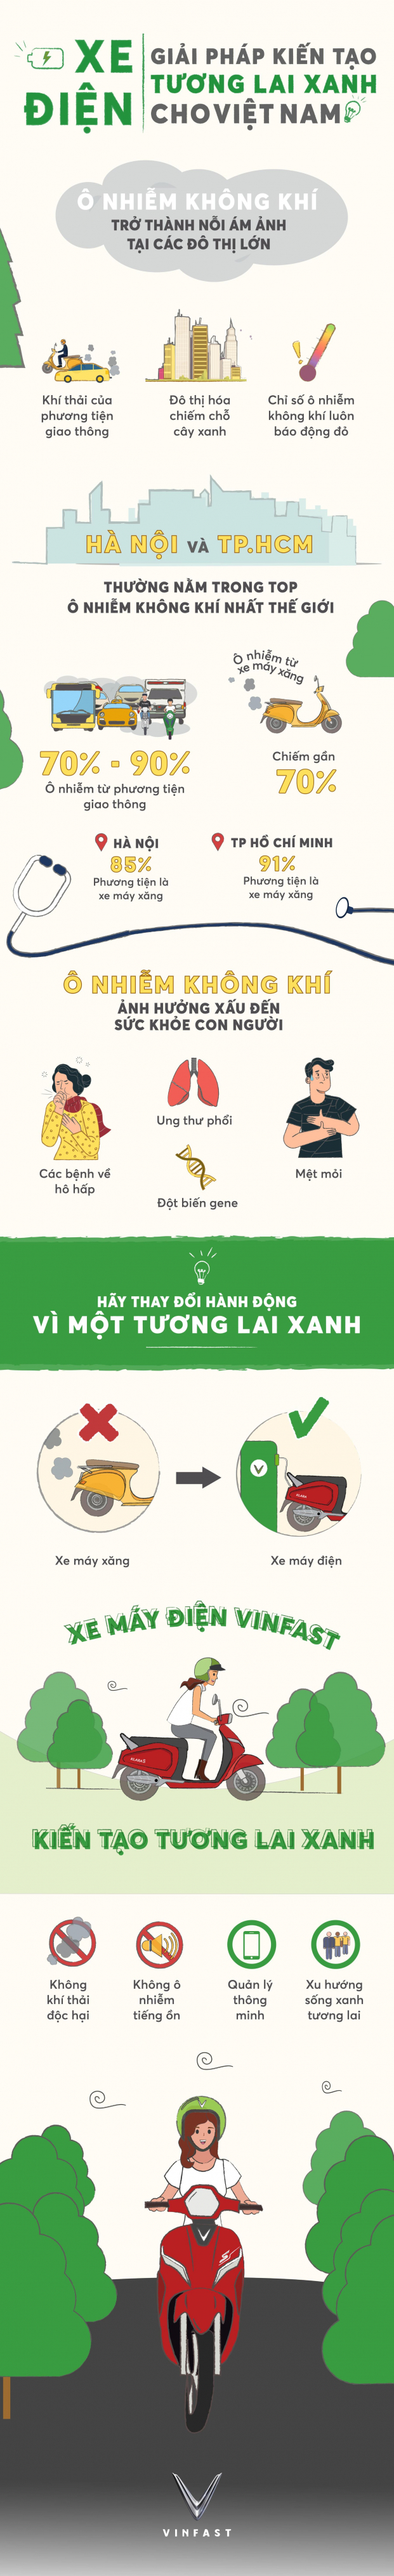 Infographic: Xe điện – Giải pháp kiến tạo tương lai xanh cho Việt Nam 0